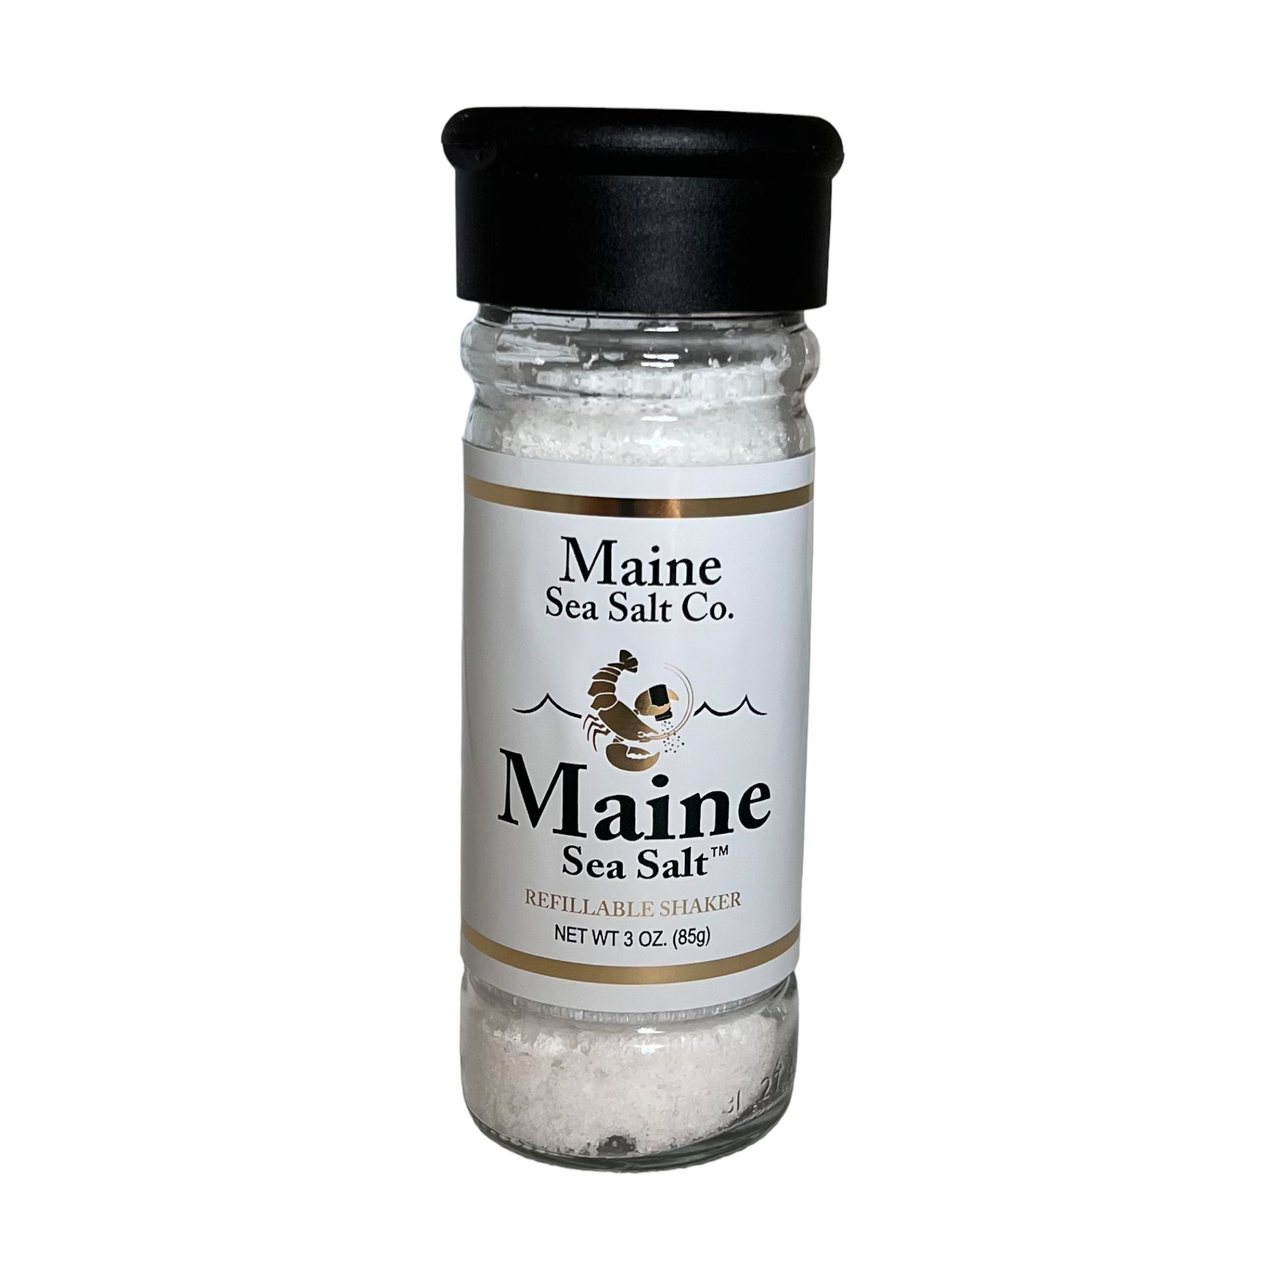 Dulse Seaweed Salt Blend, Hand-Harvested Off The Maine Coast. 3.6 oz Grinder.  .96 WT (3221) - Maine Sea Salt Company